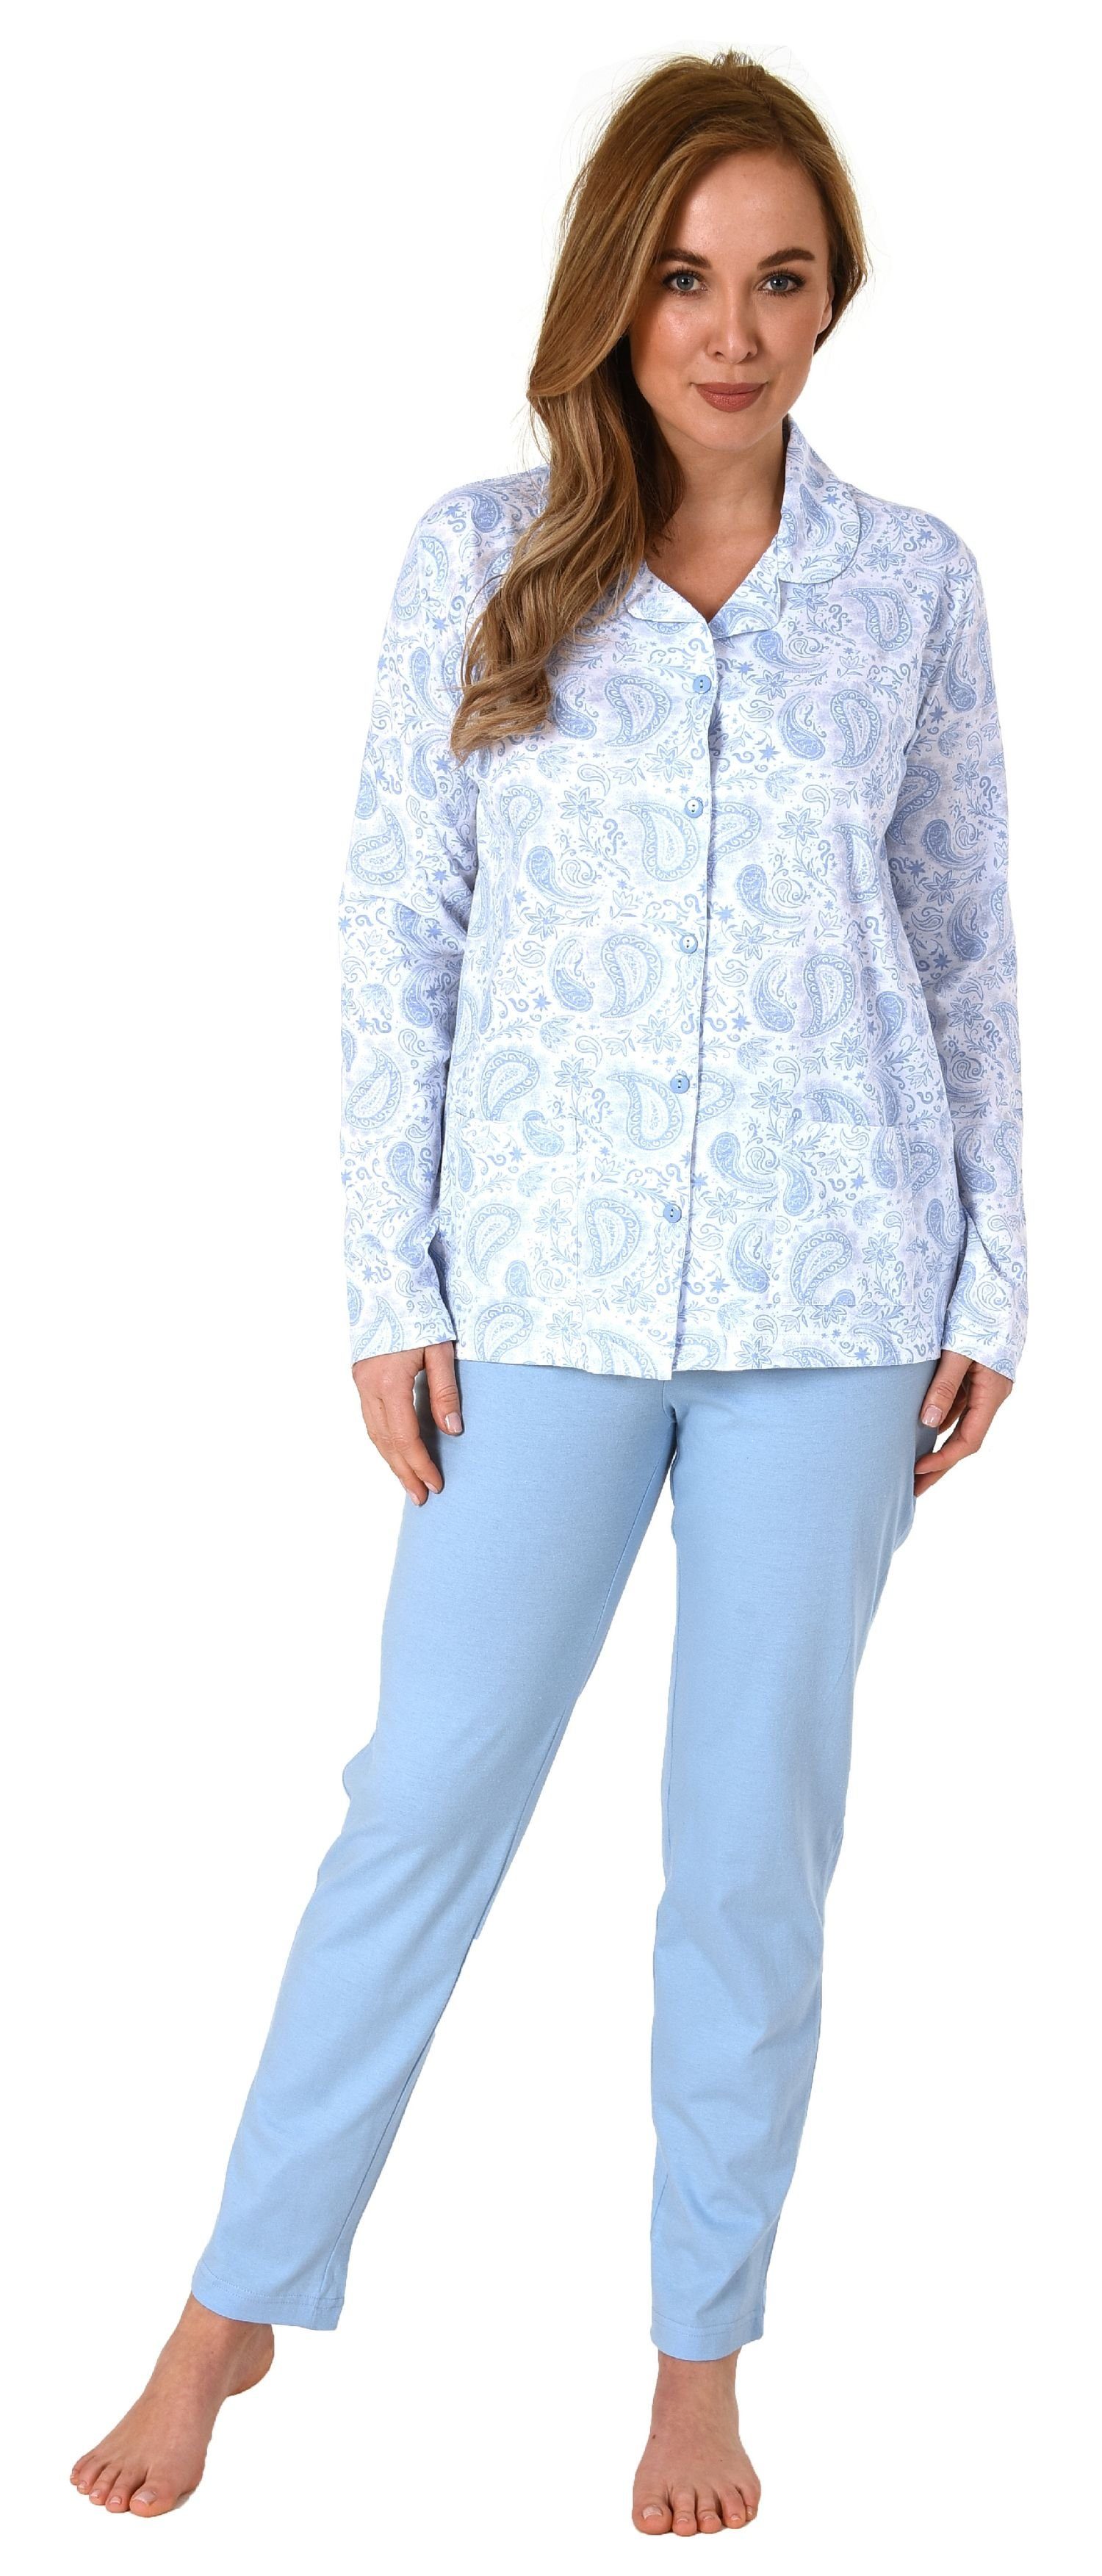 zum in Pyjama Damen Jersey langarm durchknöpfen hellblau Qualität Normann Pyjama Single